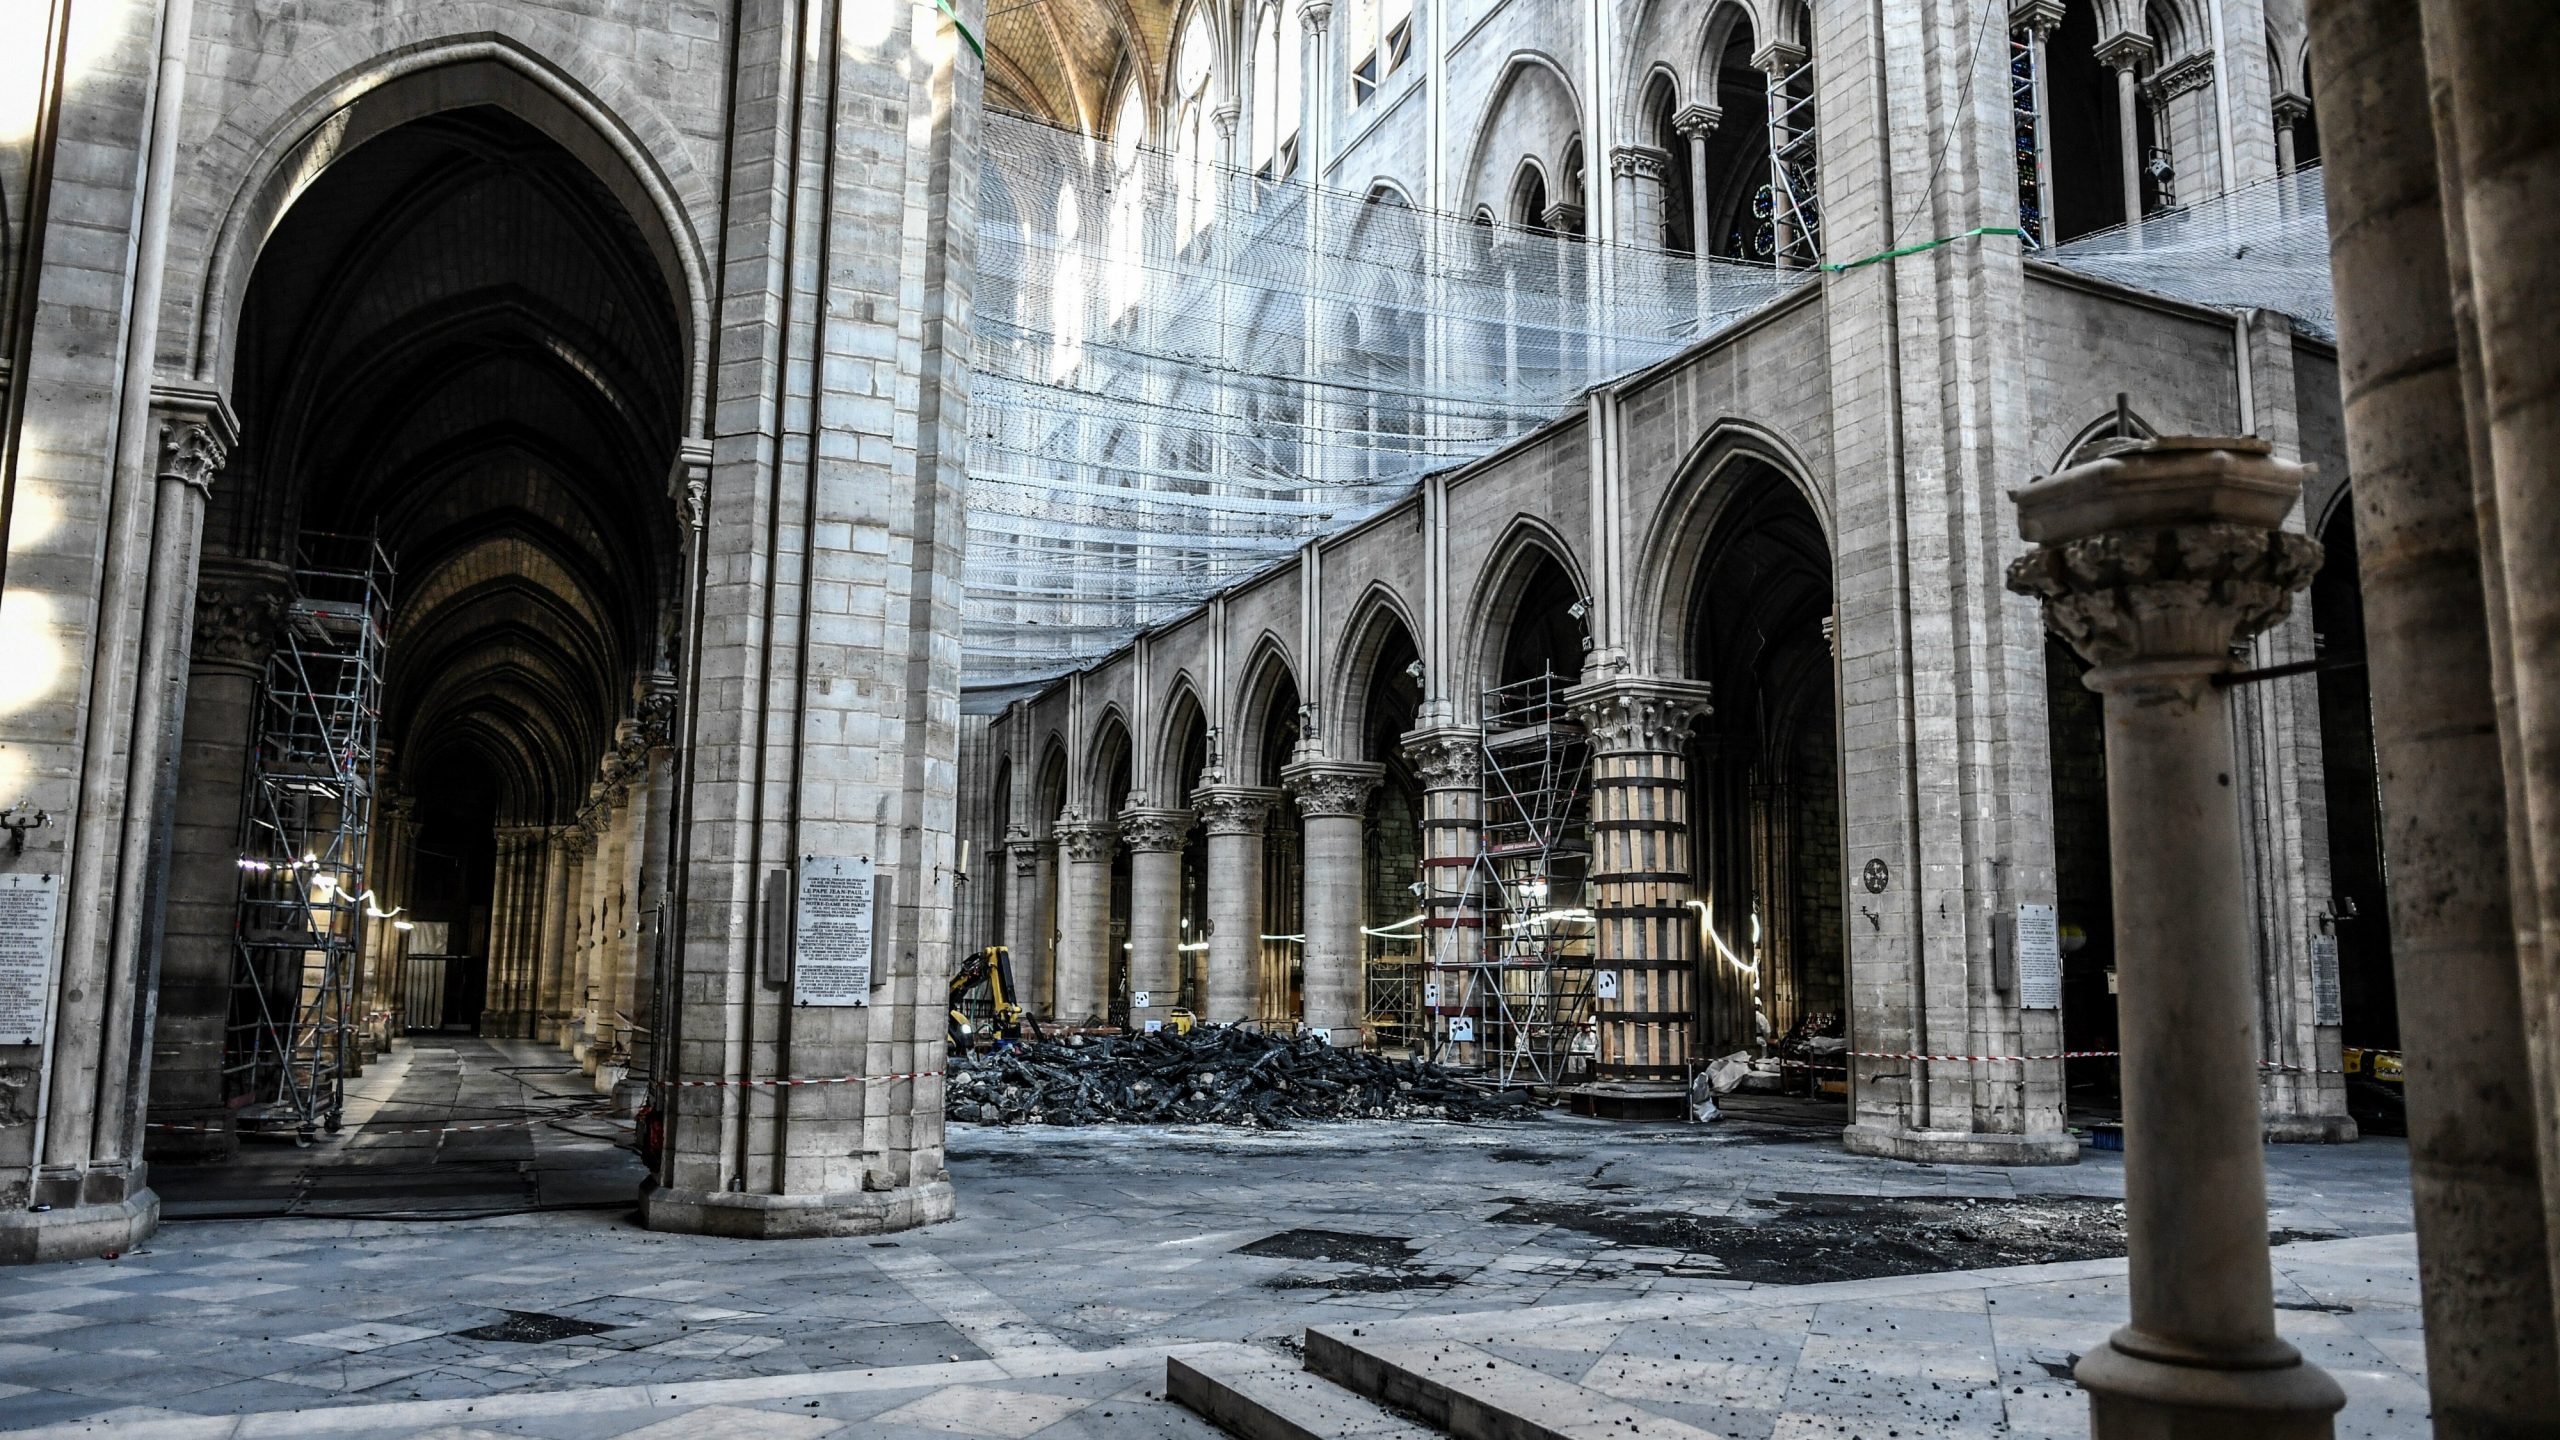 Mond: Podneta tužba zbog zagađenja oko i unutar katedrale Notr Dam 1